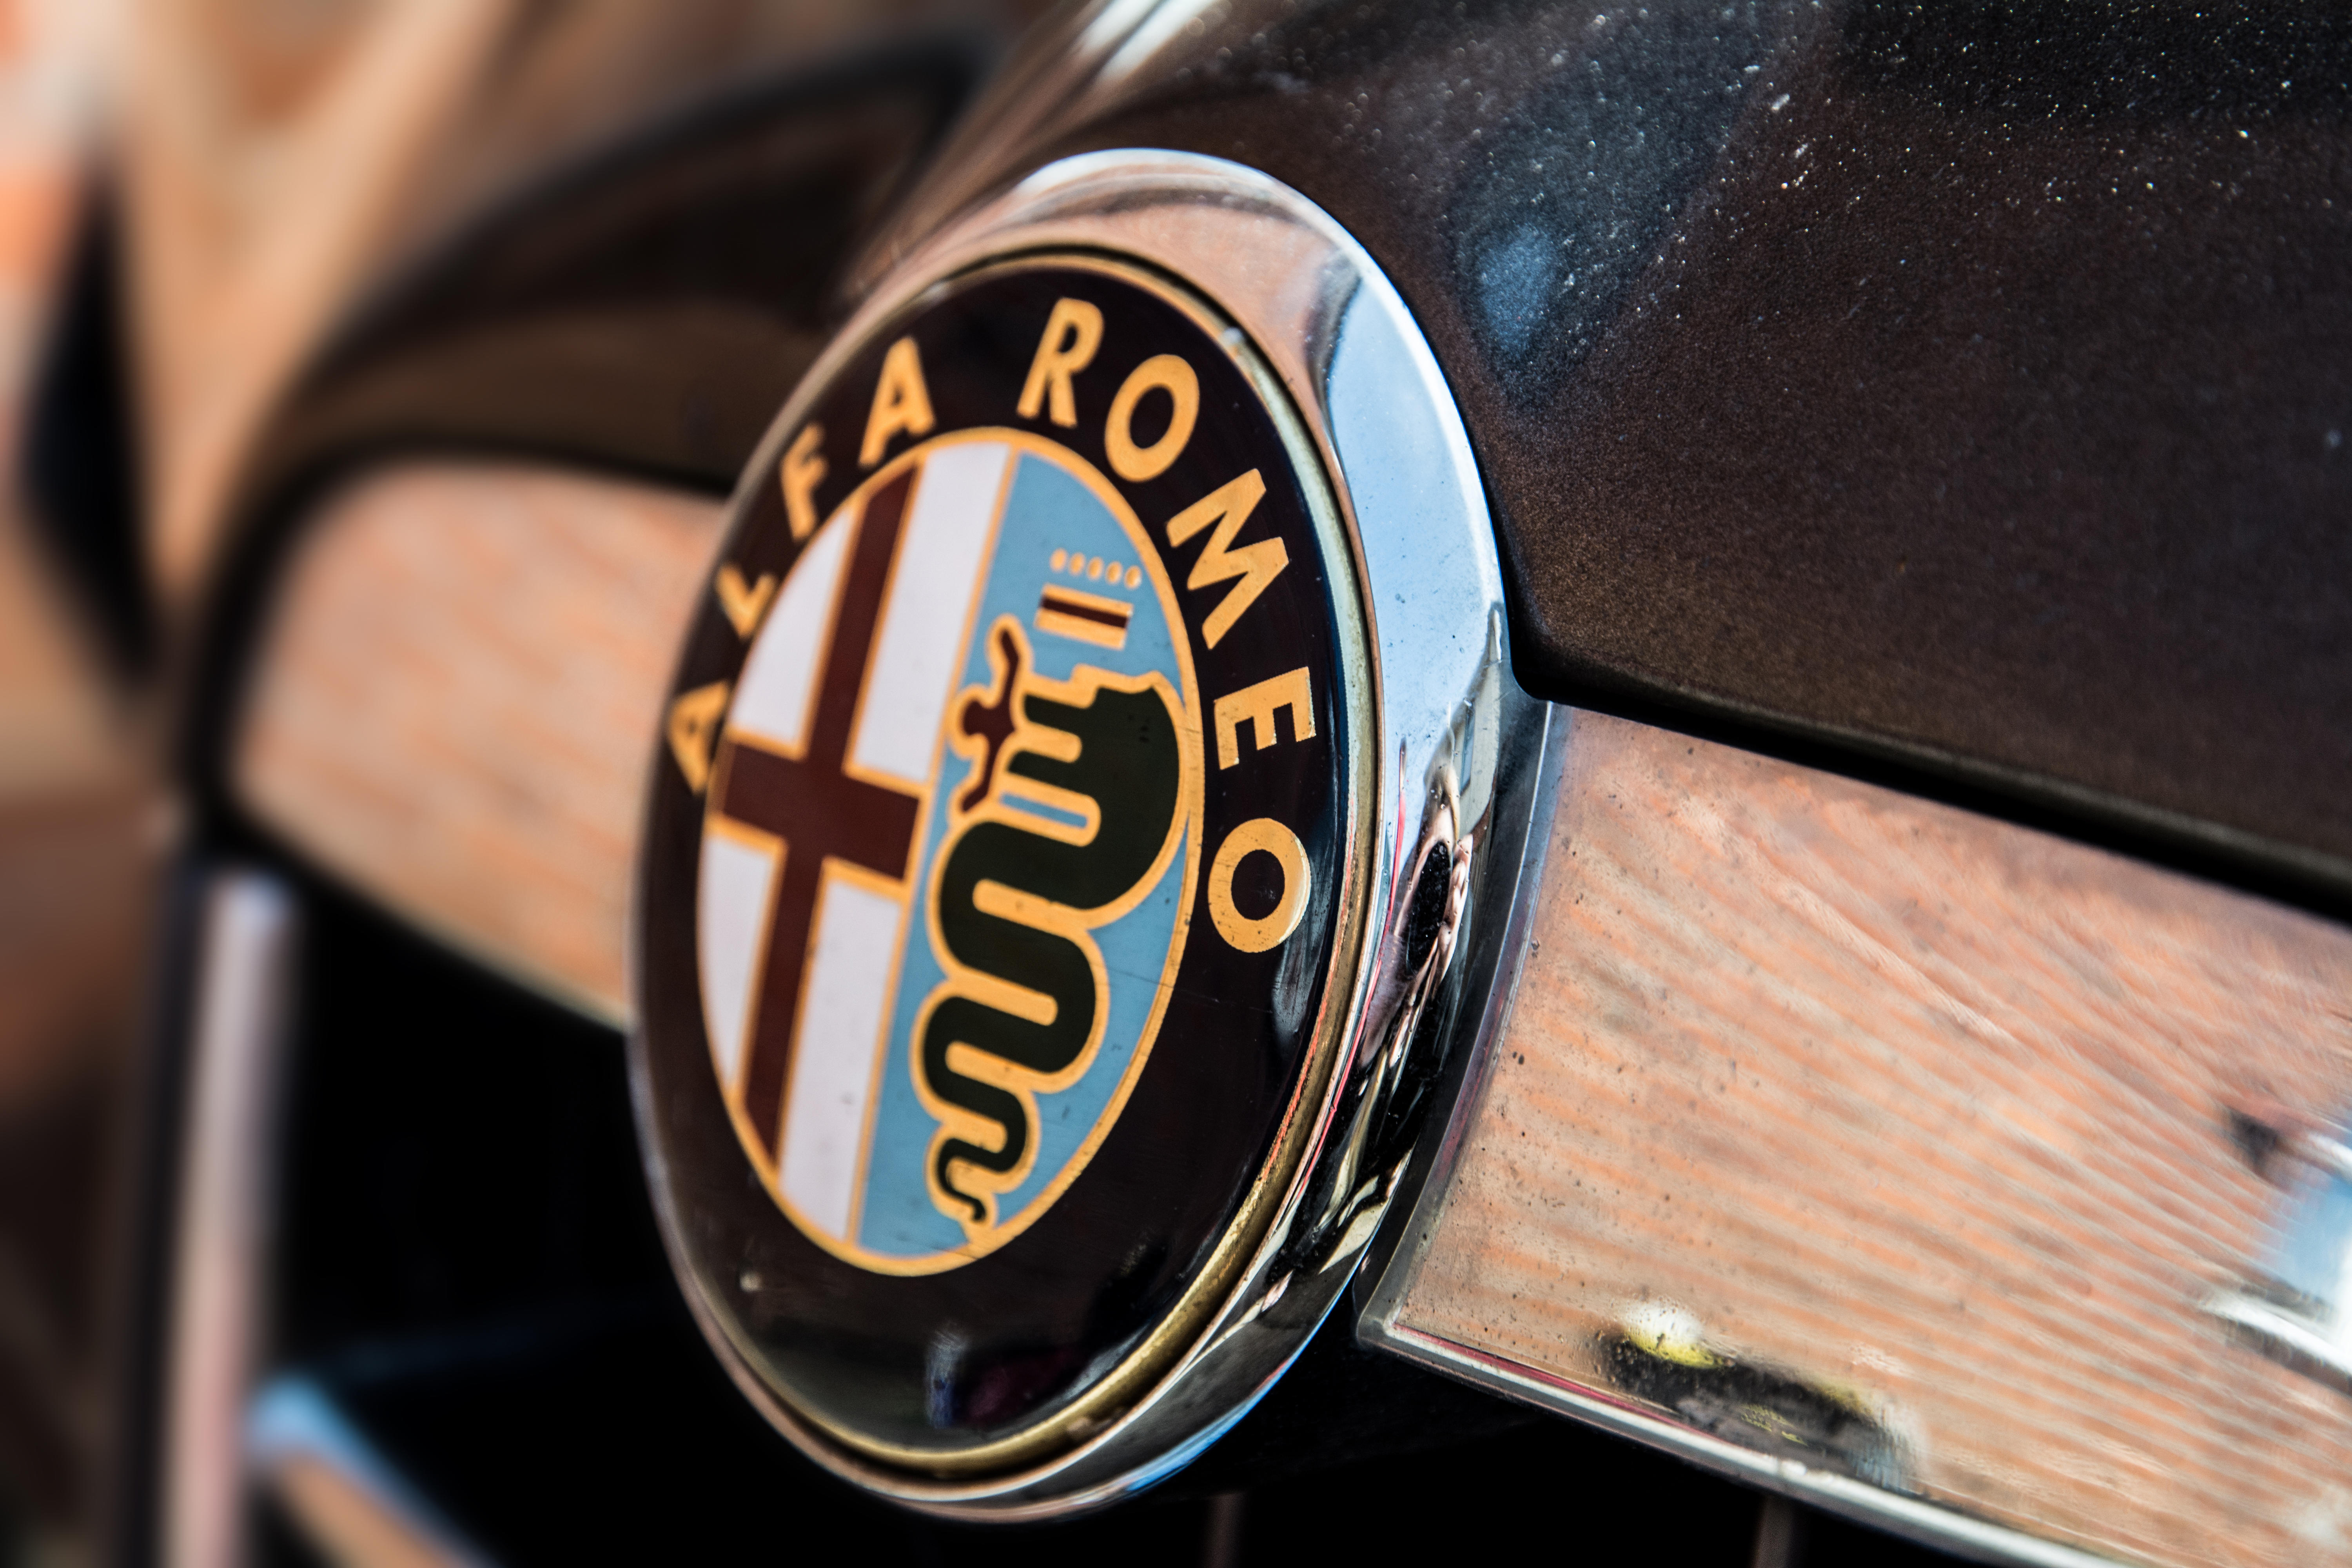 A close up of the Alfa Romeo badge